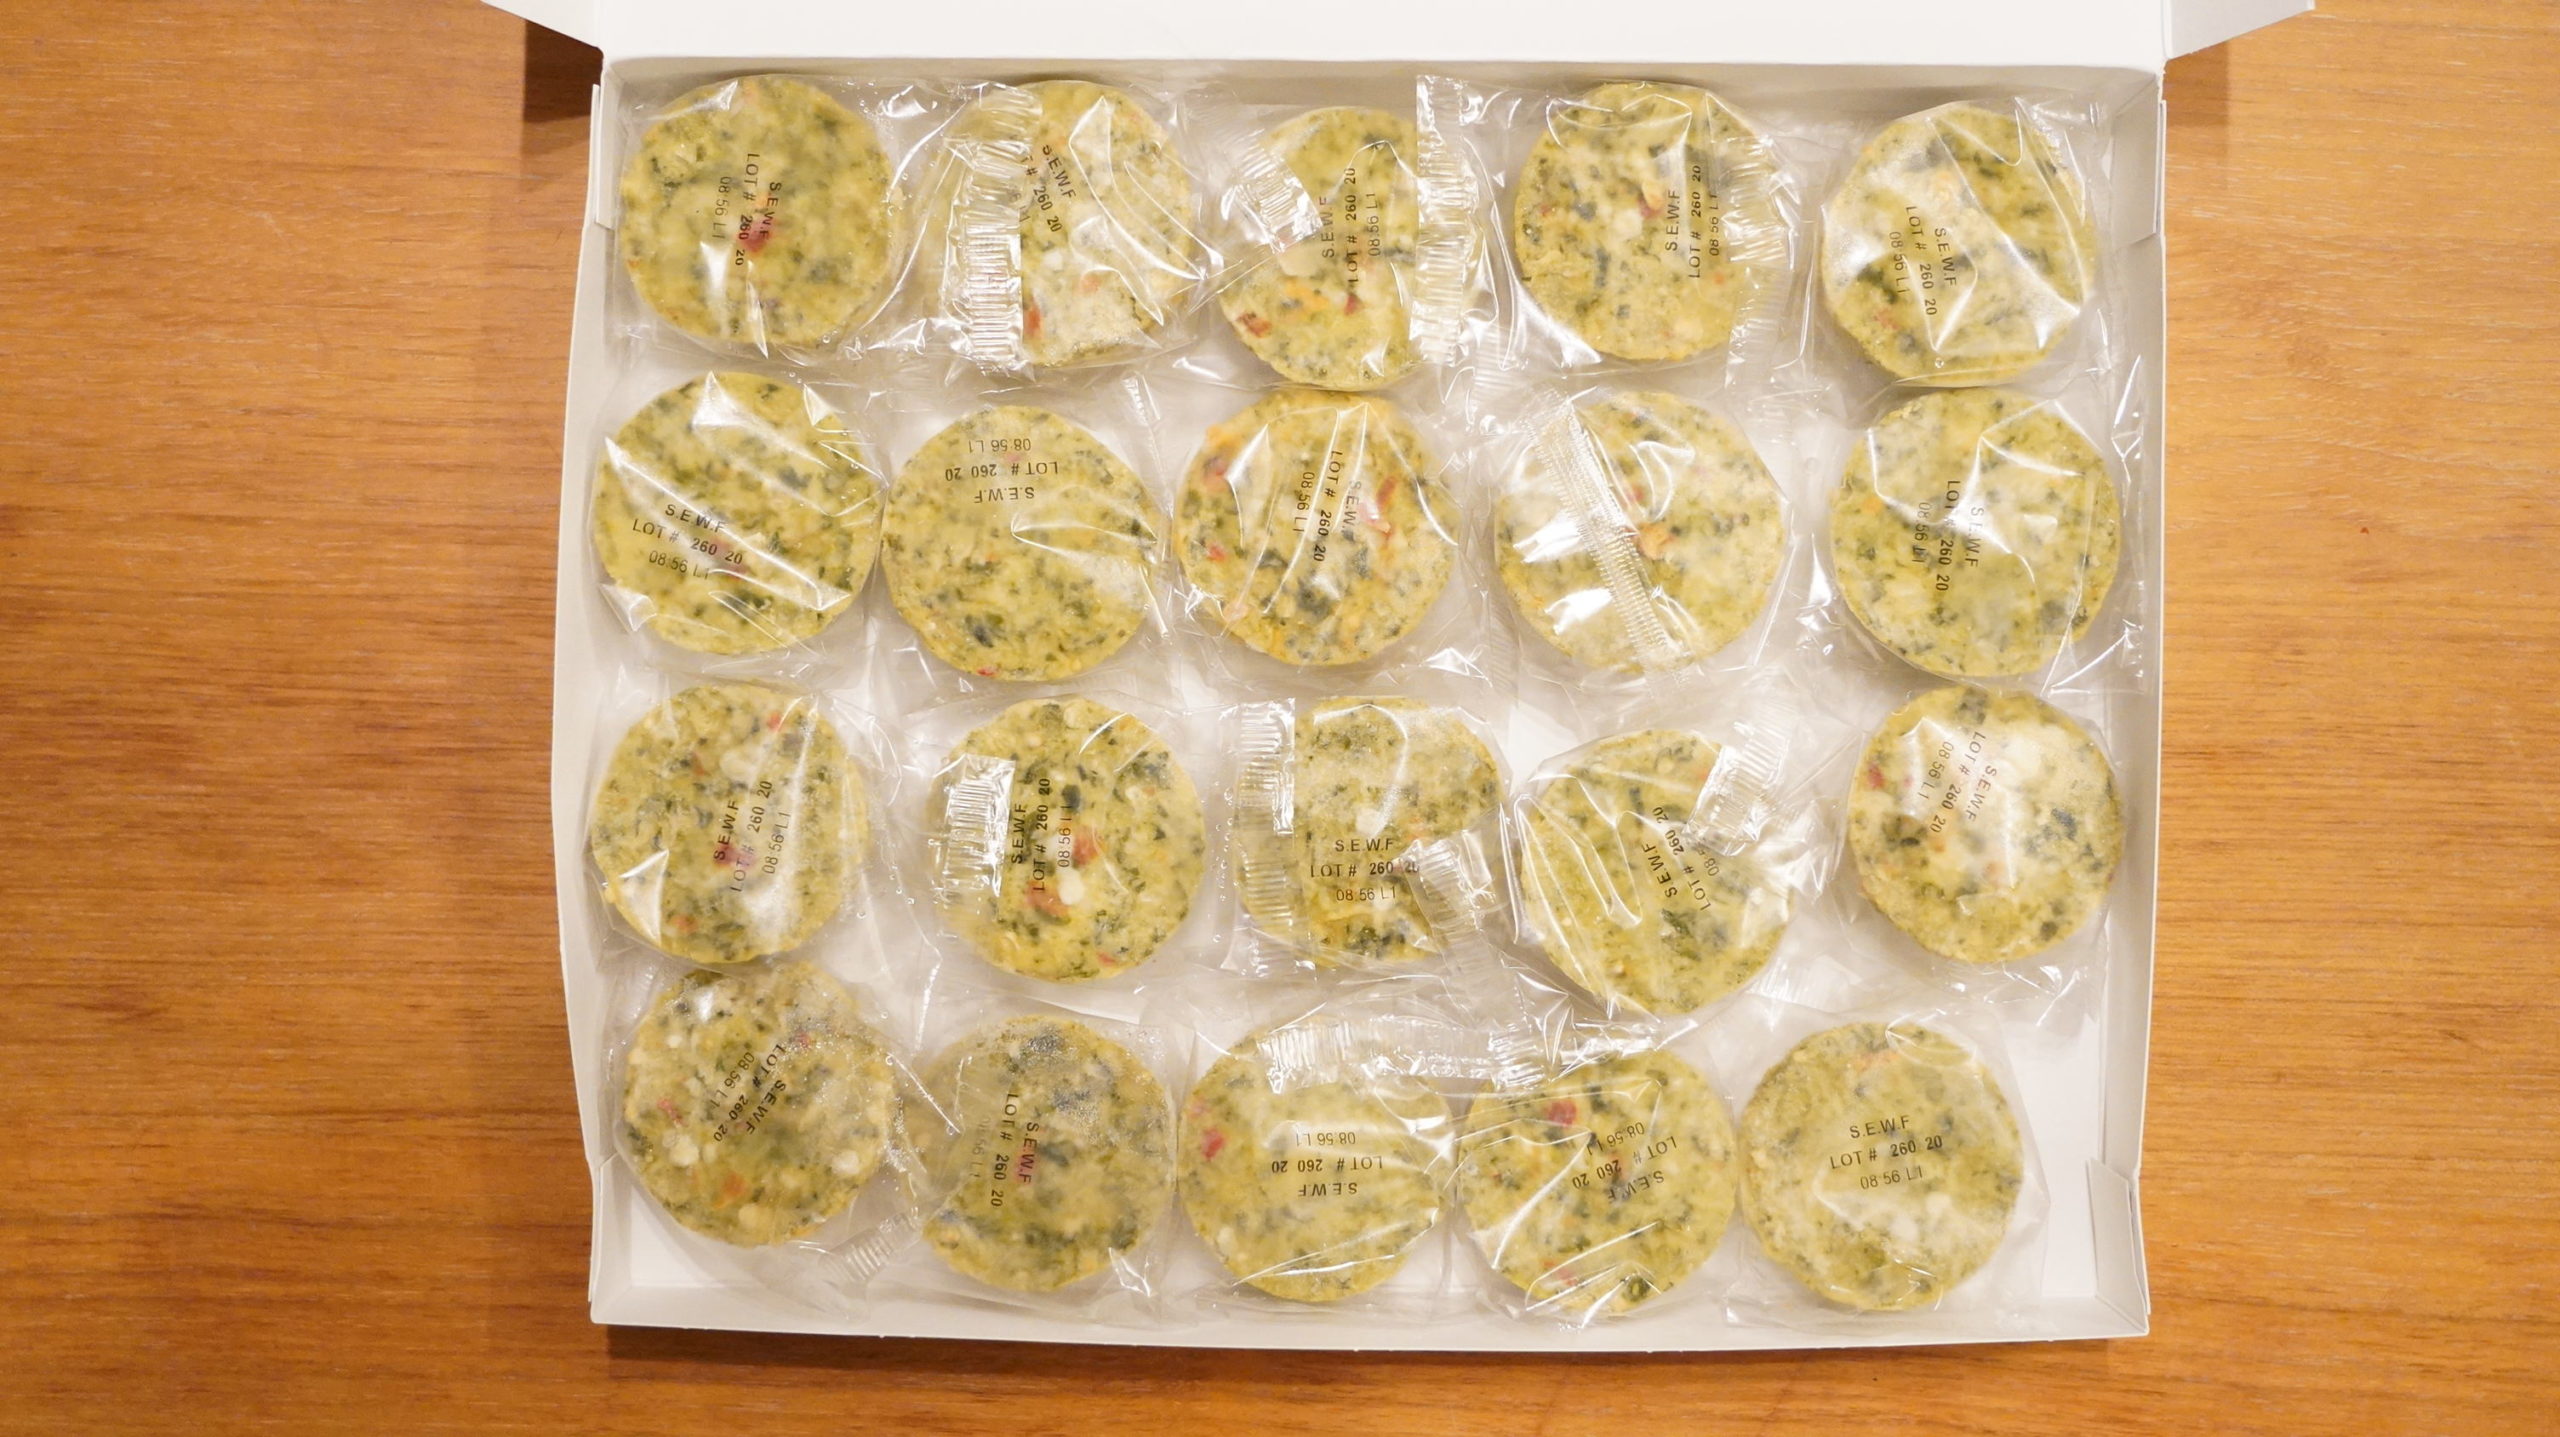 コストコの冷凍食品「ほうれん草のフリッタータ」が20個入っている写真